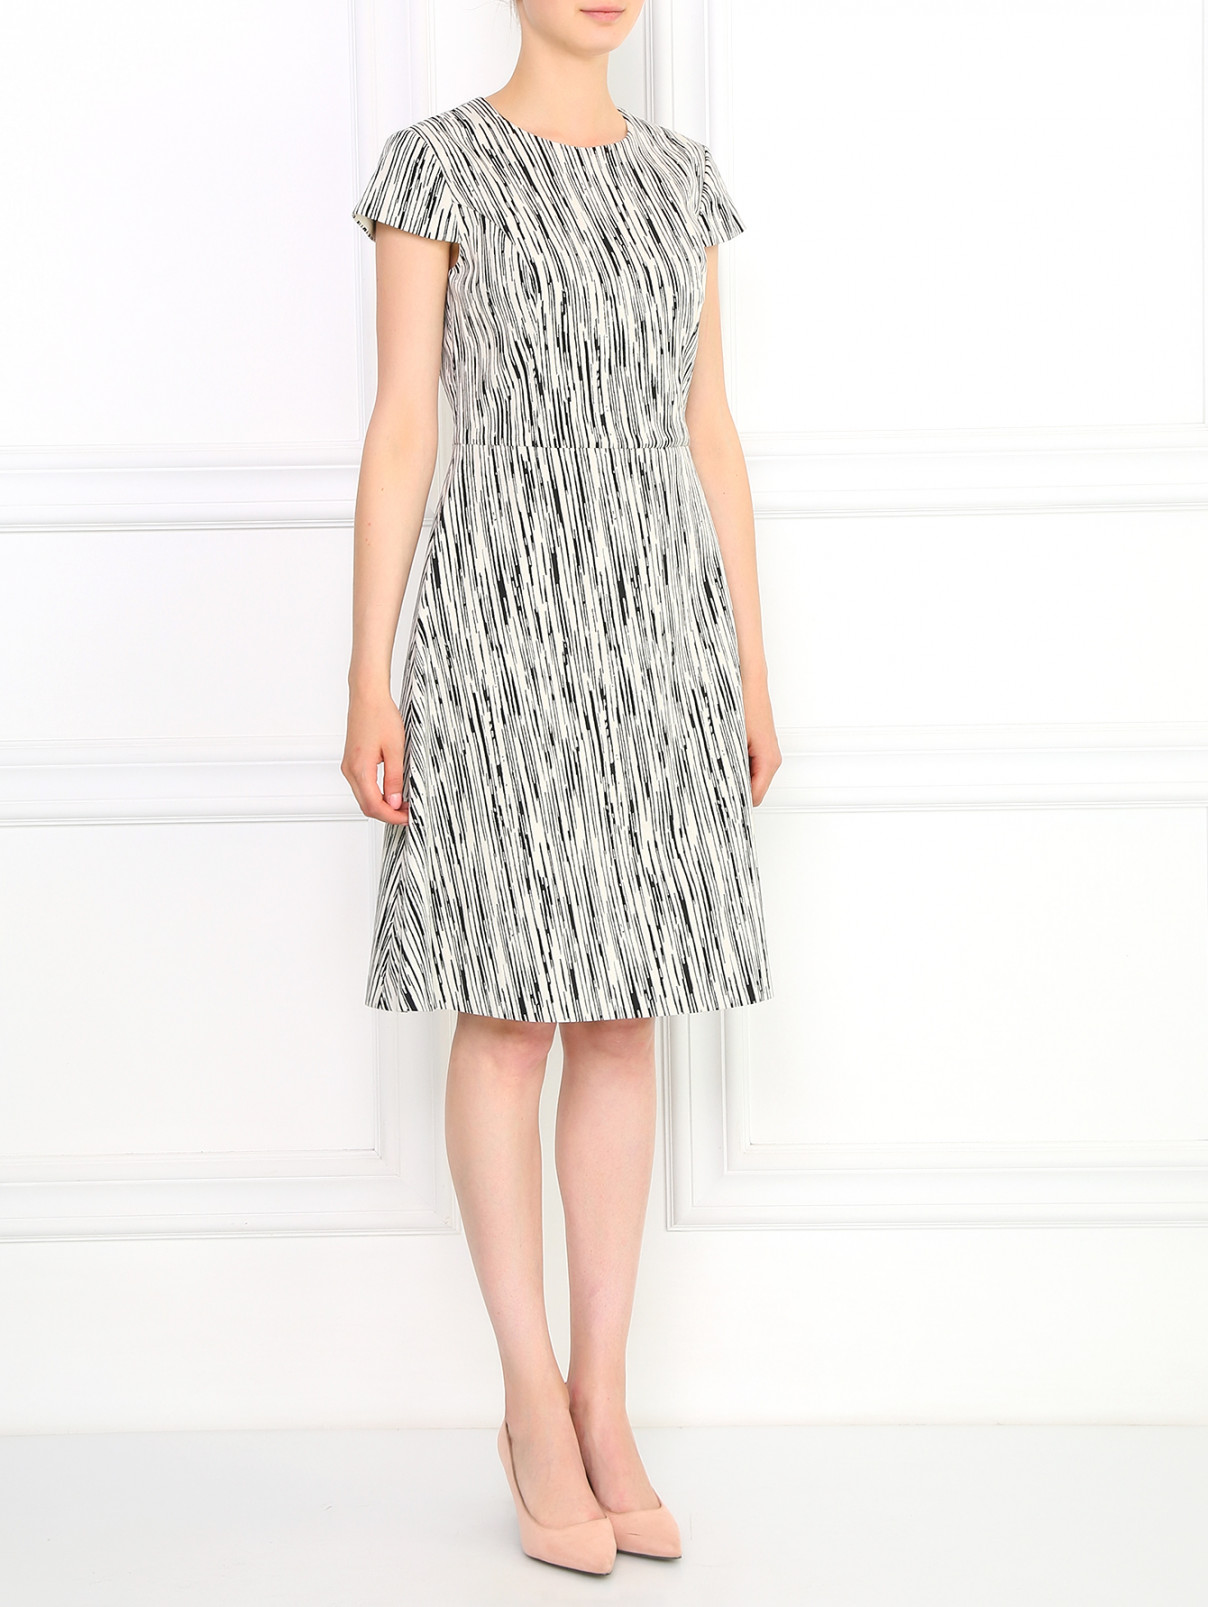 Платье-футляр с абстрактным узором A La Russe  –  Модель Общий вид  – Цвет:  Узор